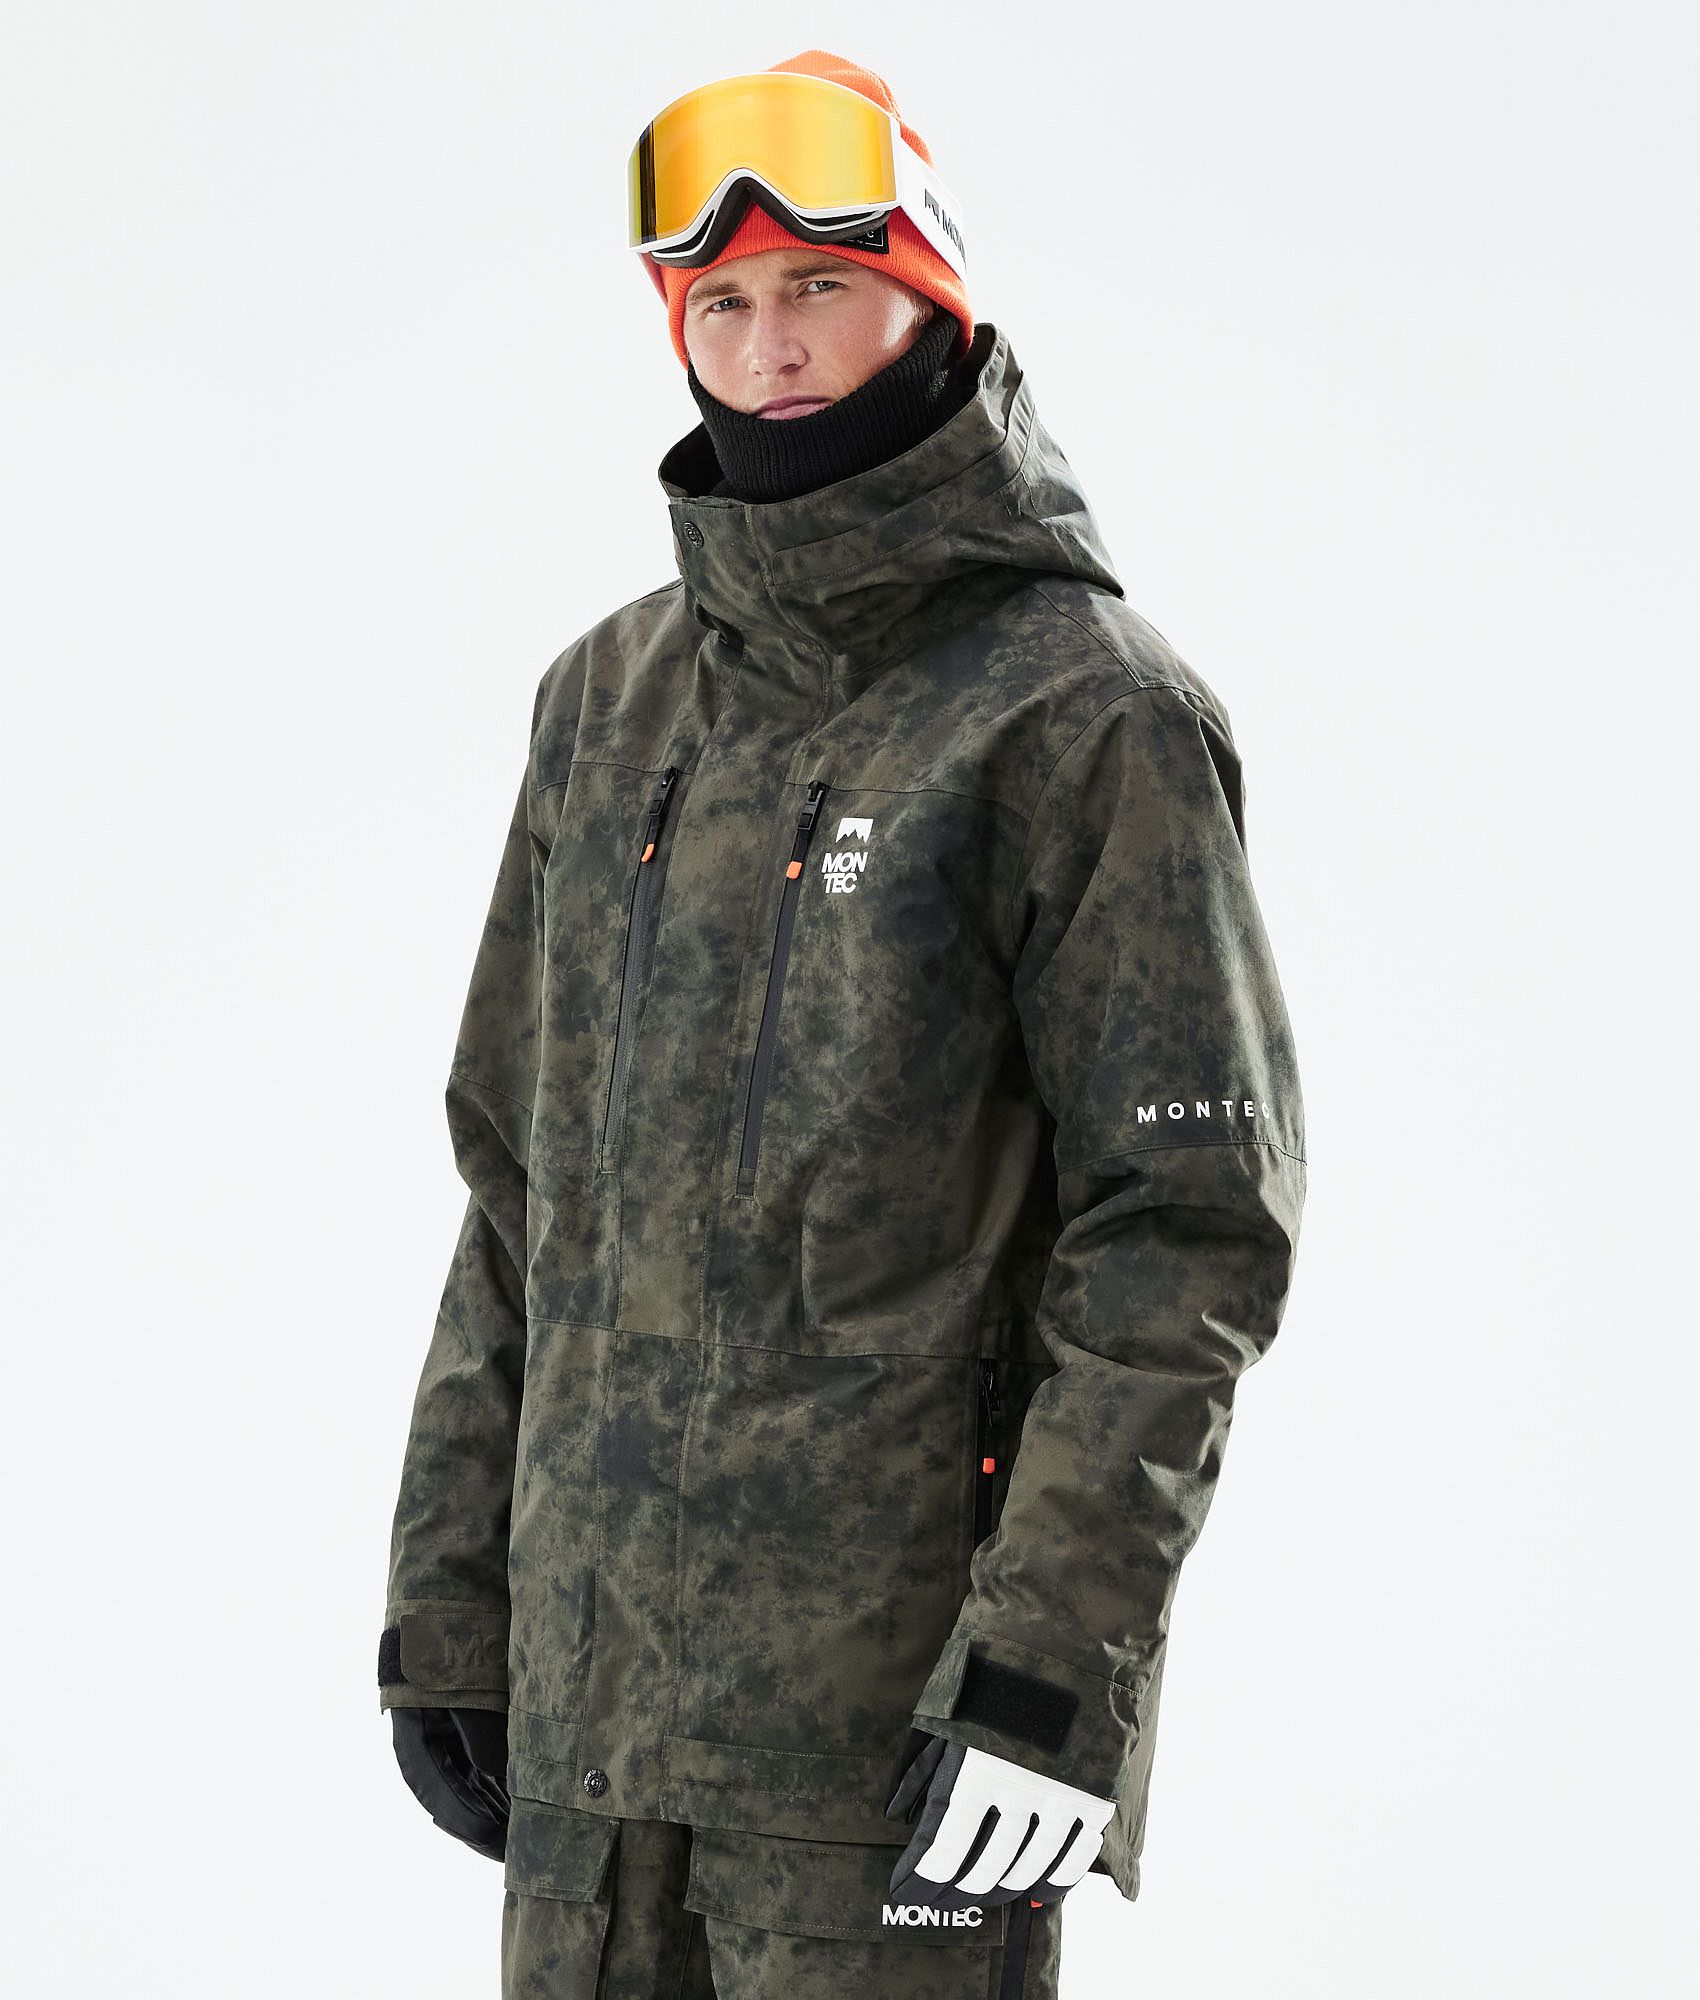 Nuevo Details about   AIRTRACKS Hombre Chaqueta de Snowboard Esquí Invierno Tallas M L XL 